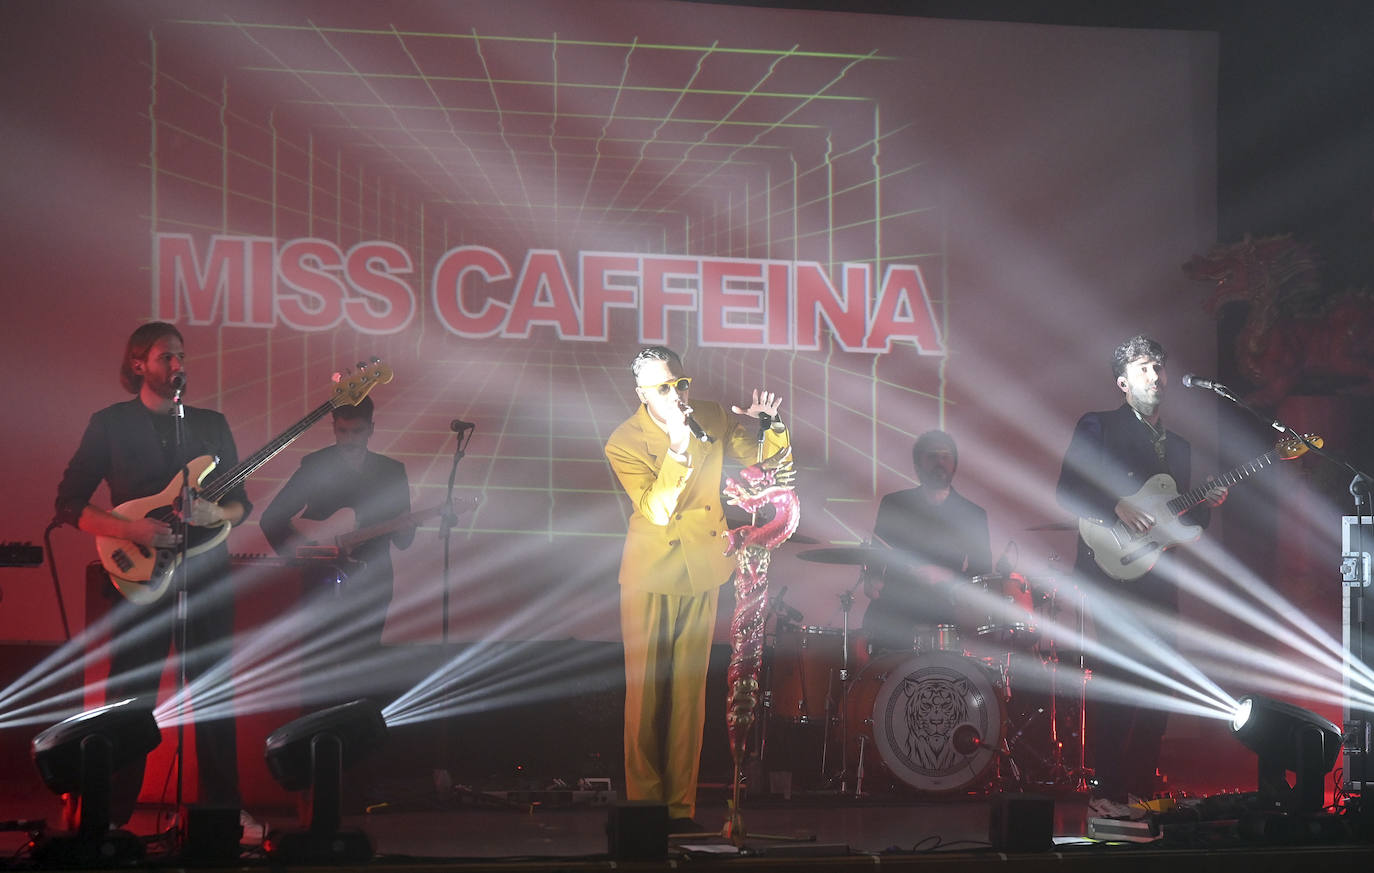 Imagen secundaria 1 - El certamen contó con la actuación estelar de Miss Caffeina. 